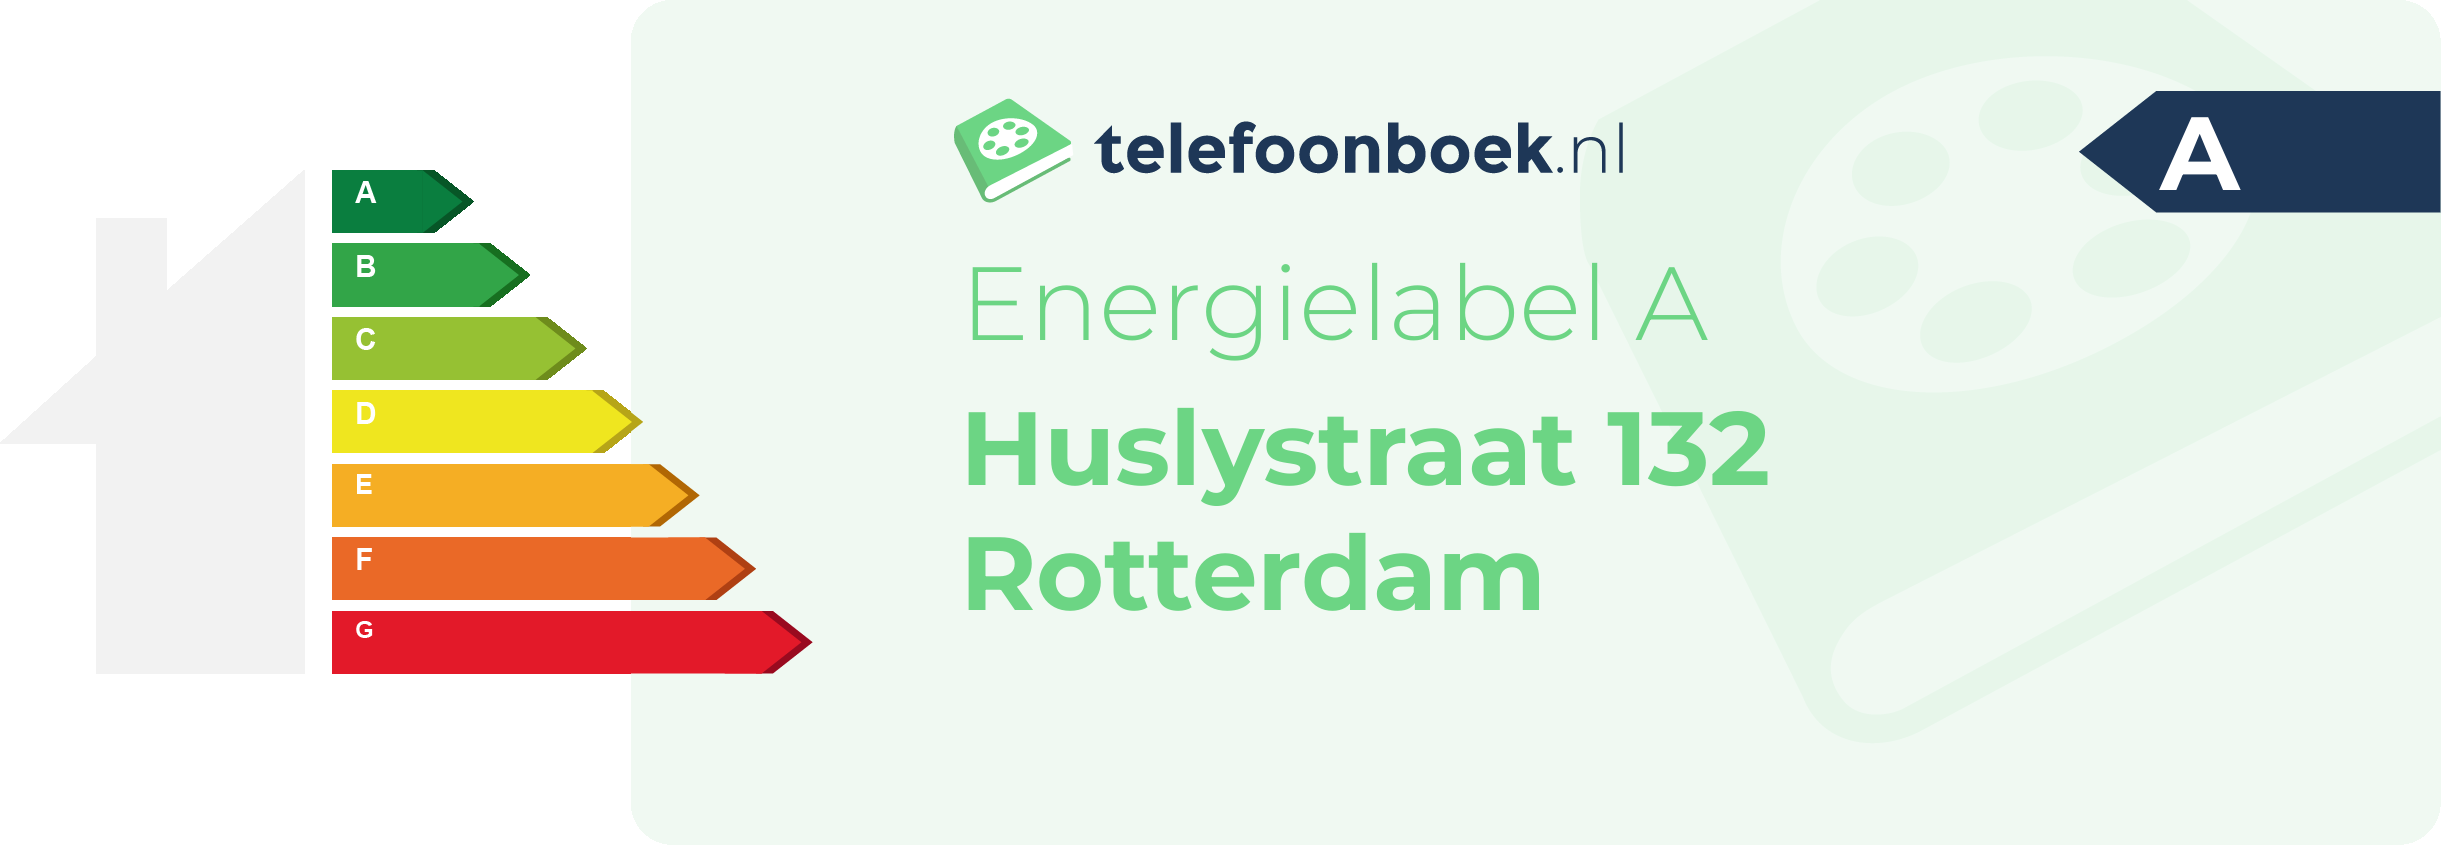 Energielabel Huslystraat 132 Rotterdam